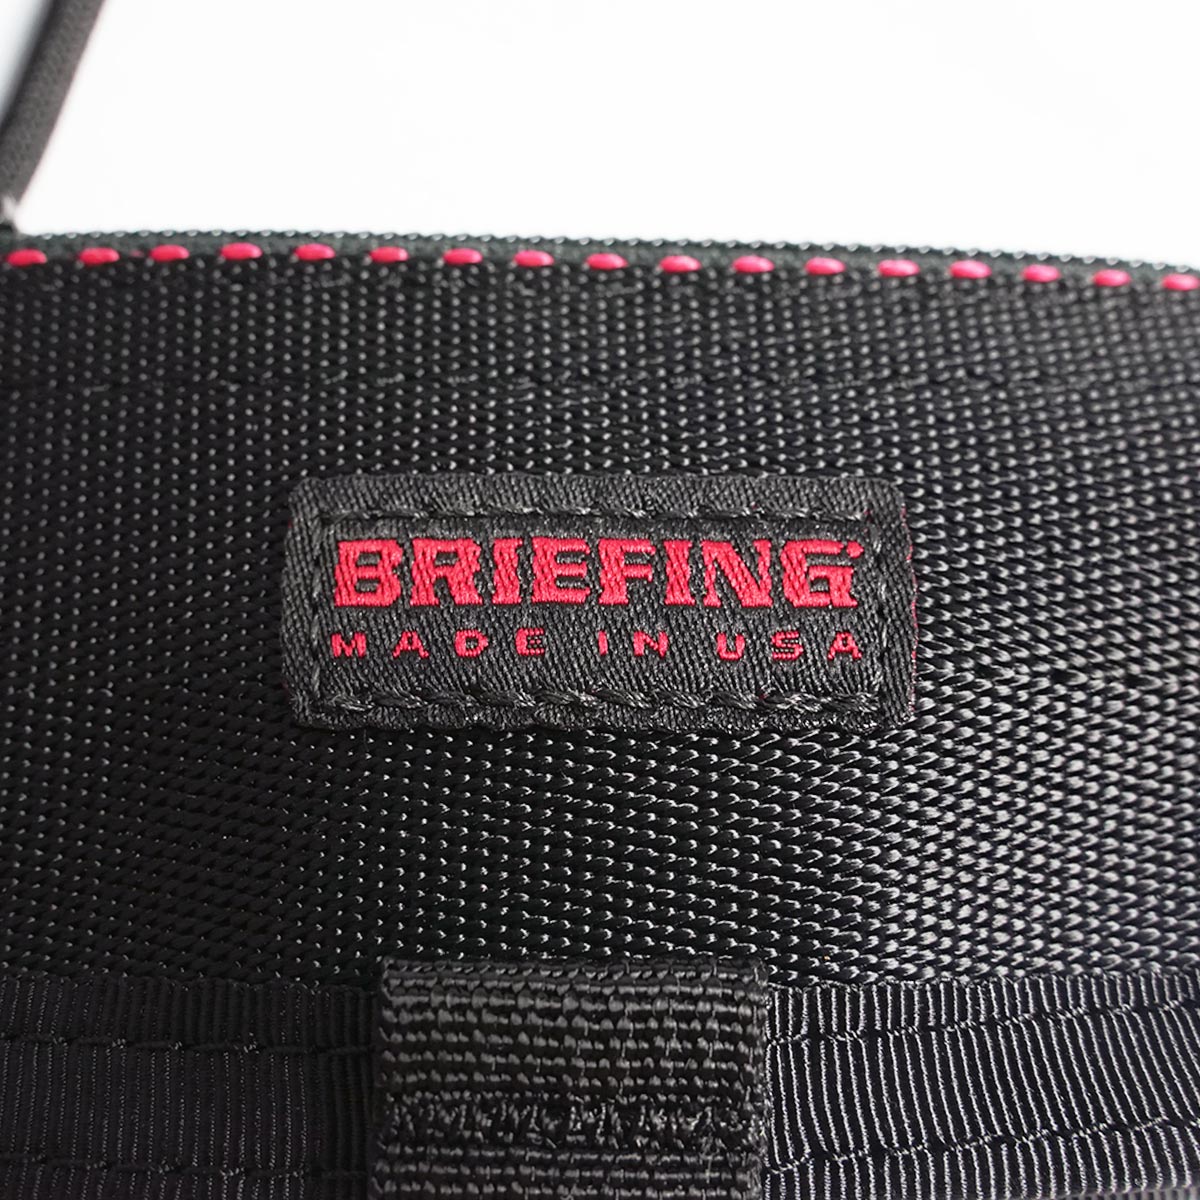 ブリーフィング BRIEFING ジップキーケース MADE IN USA 米国製 